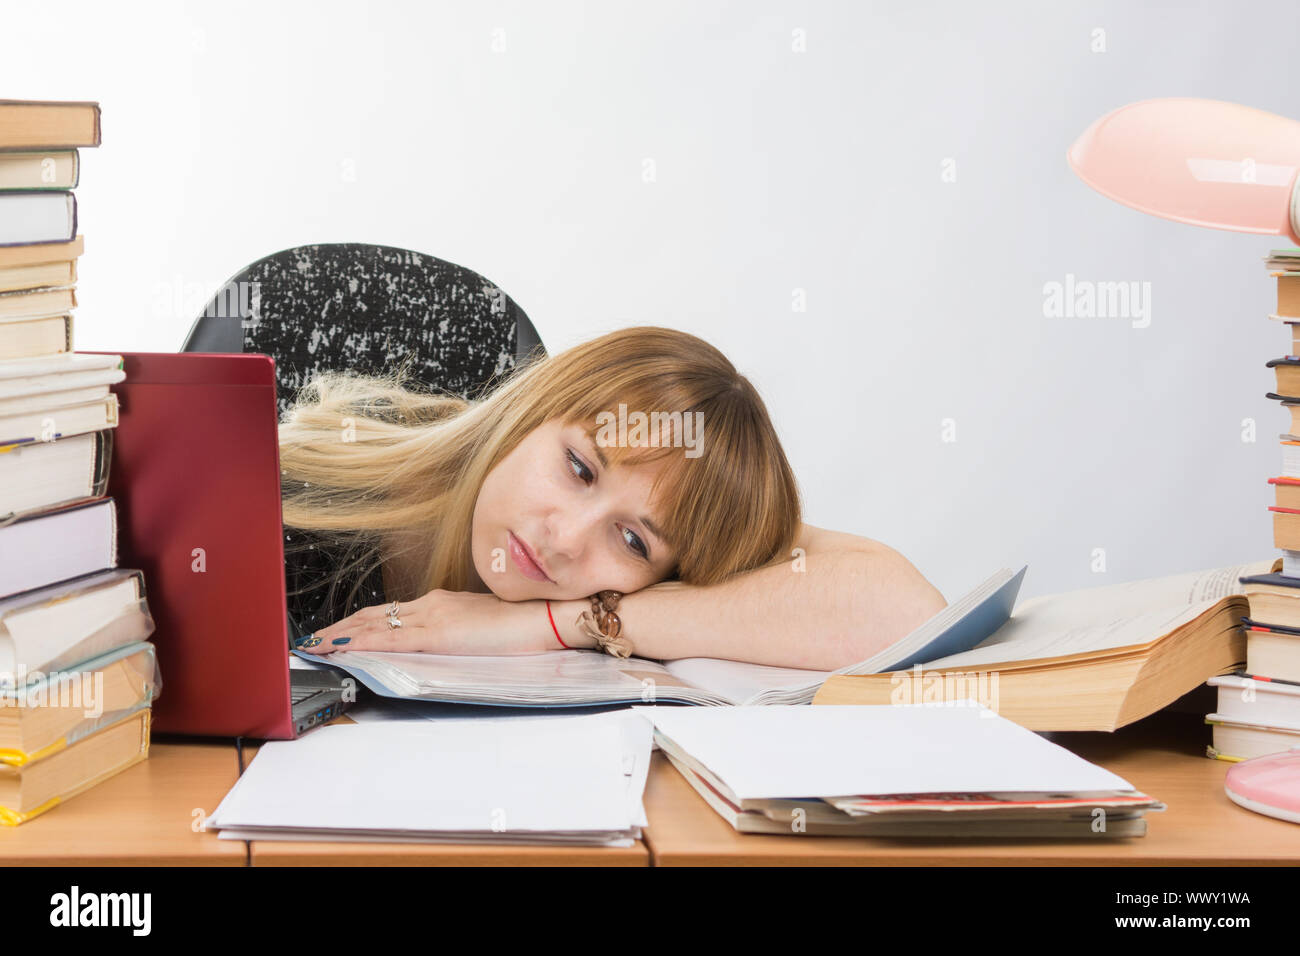 Chica estudiante puso su cabeza en sus manos repletas de libros y papeles tirados en el escritorio Foto de stock